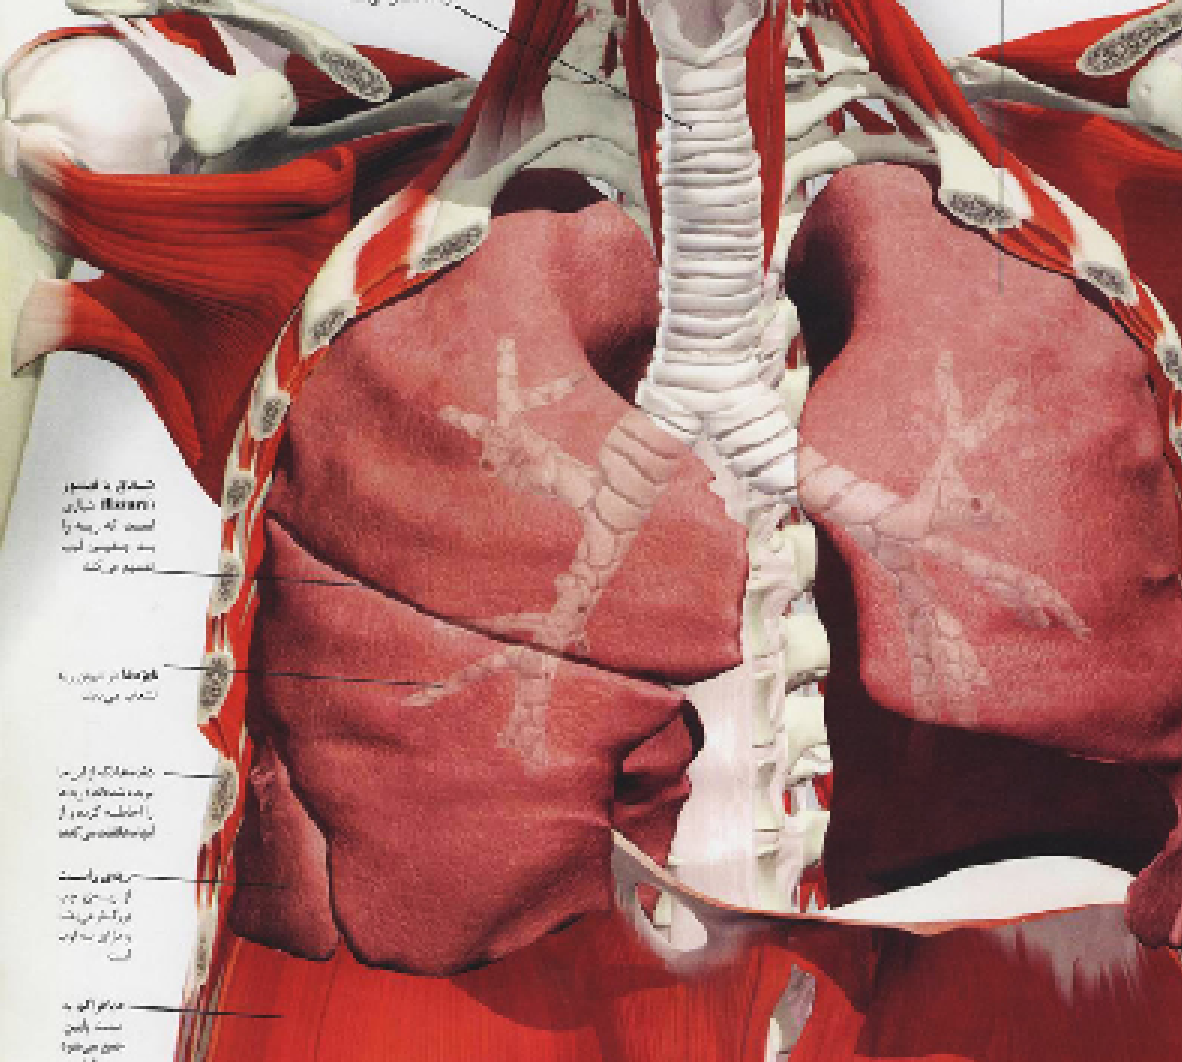 آناتومی ریه و قفسه سینه به روش طب کهن انسان